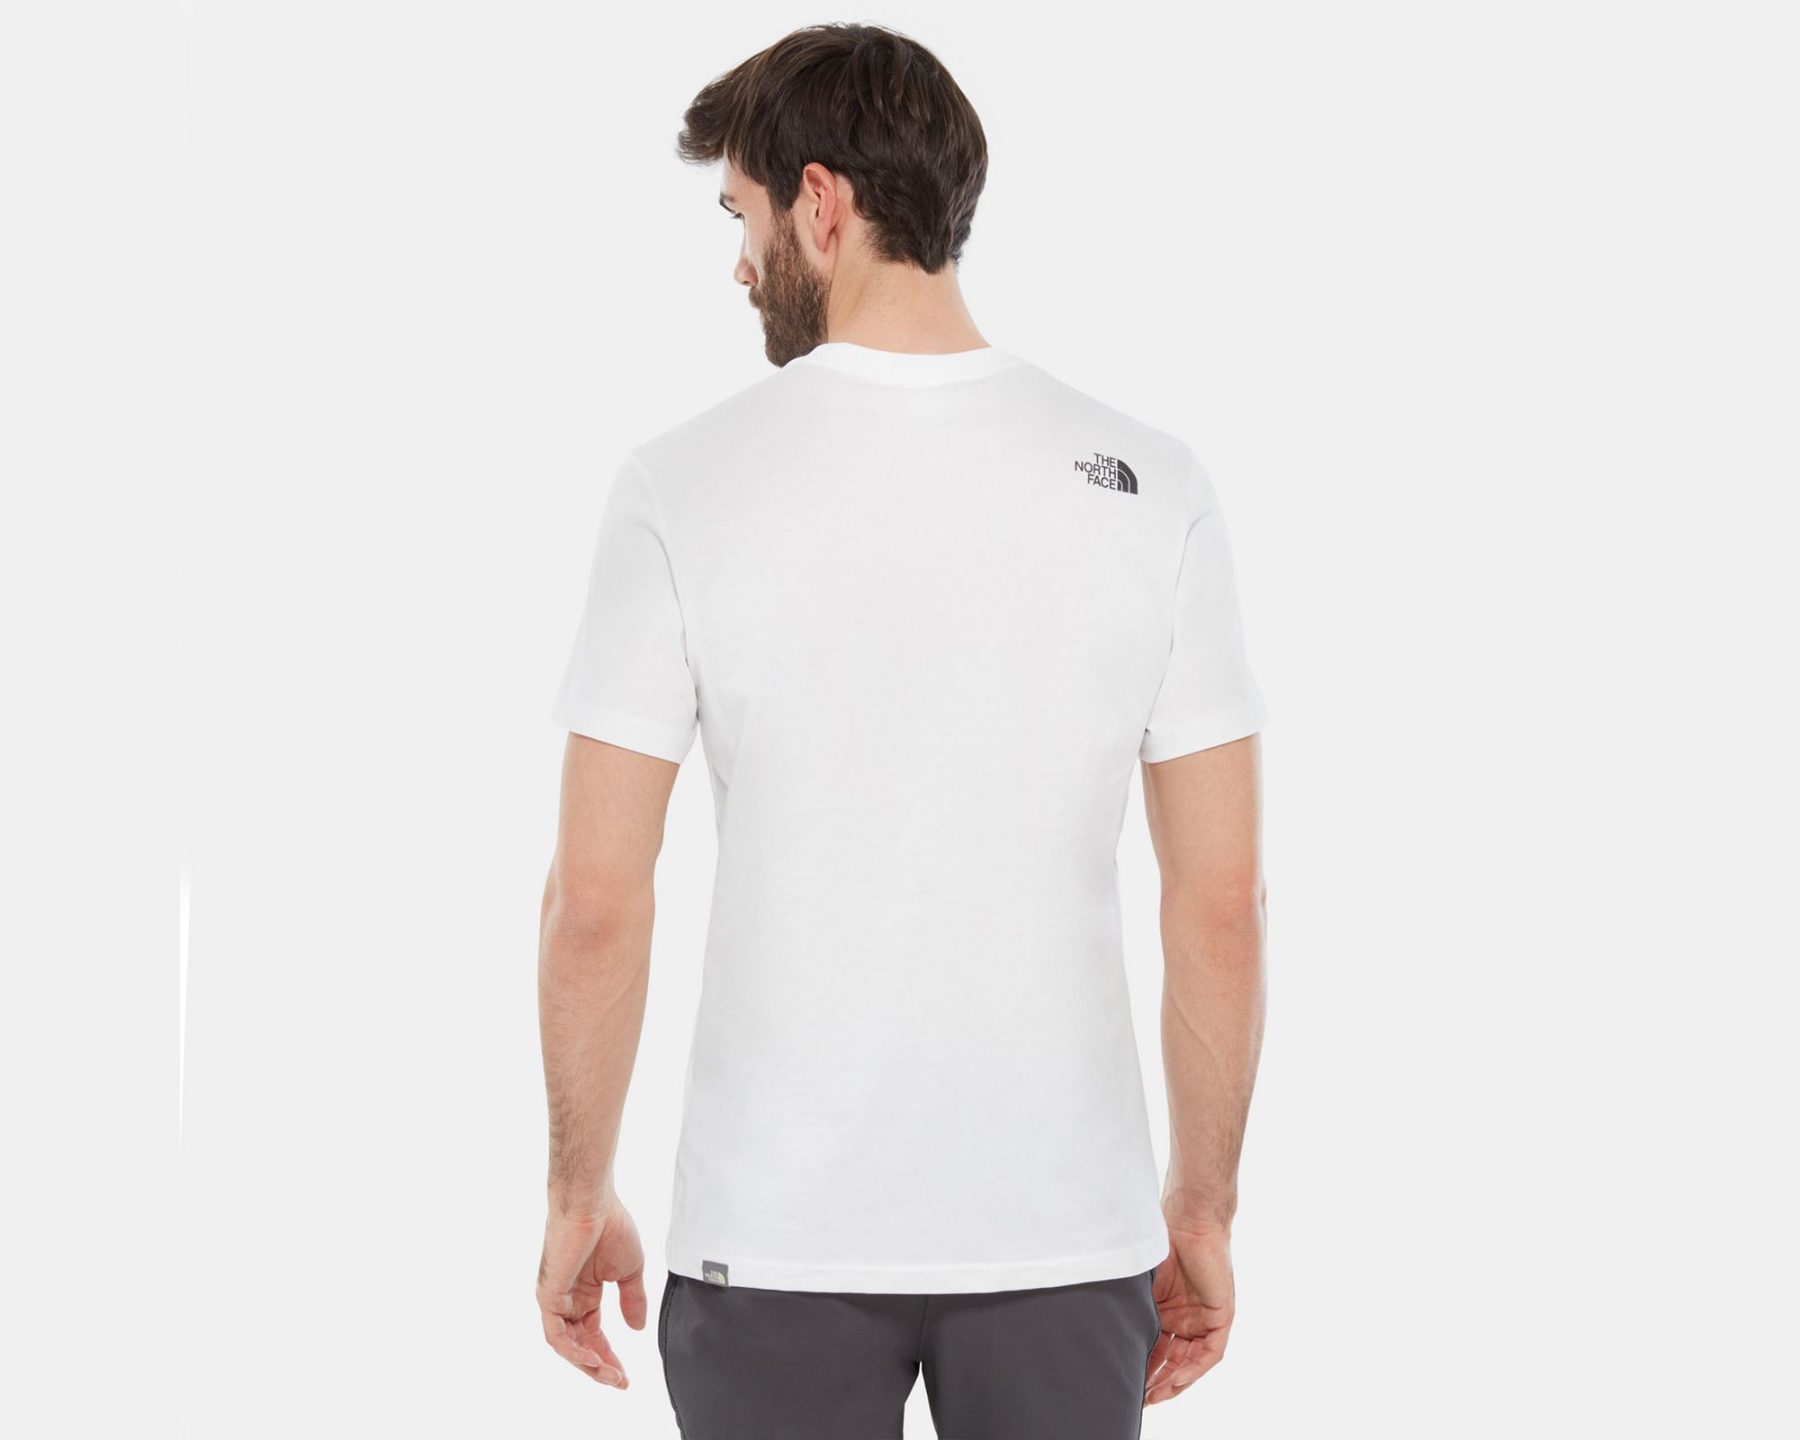 تی شرت نوشته دار ورزشی مردانه Climbing Tee سفید